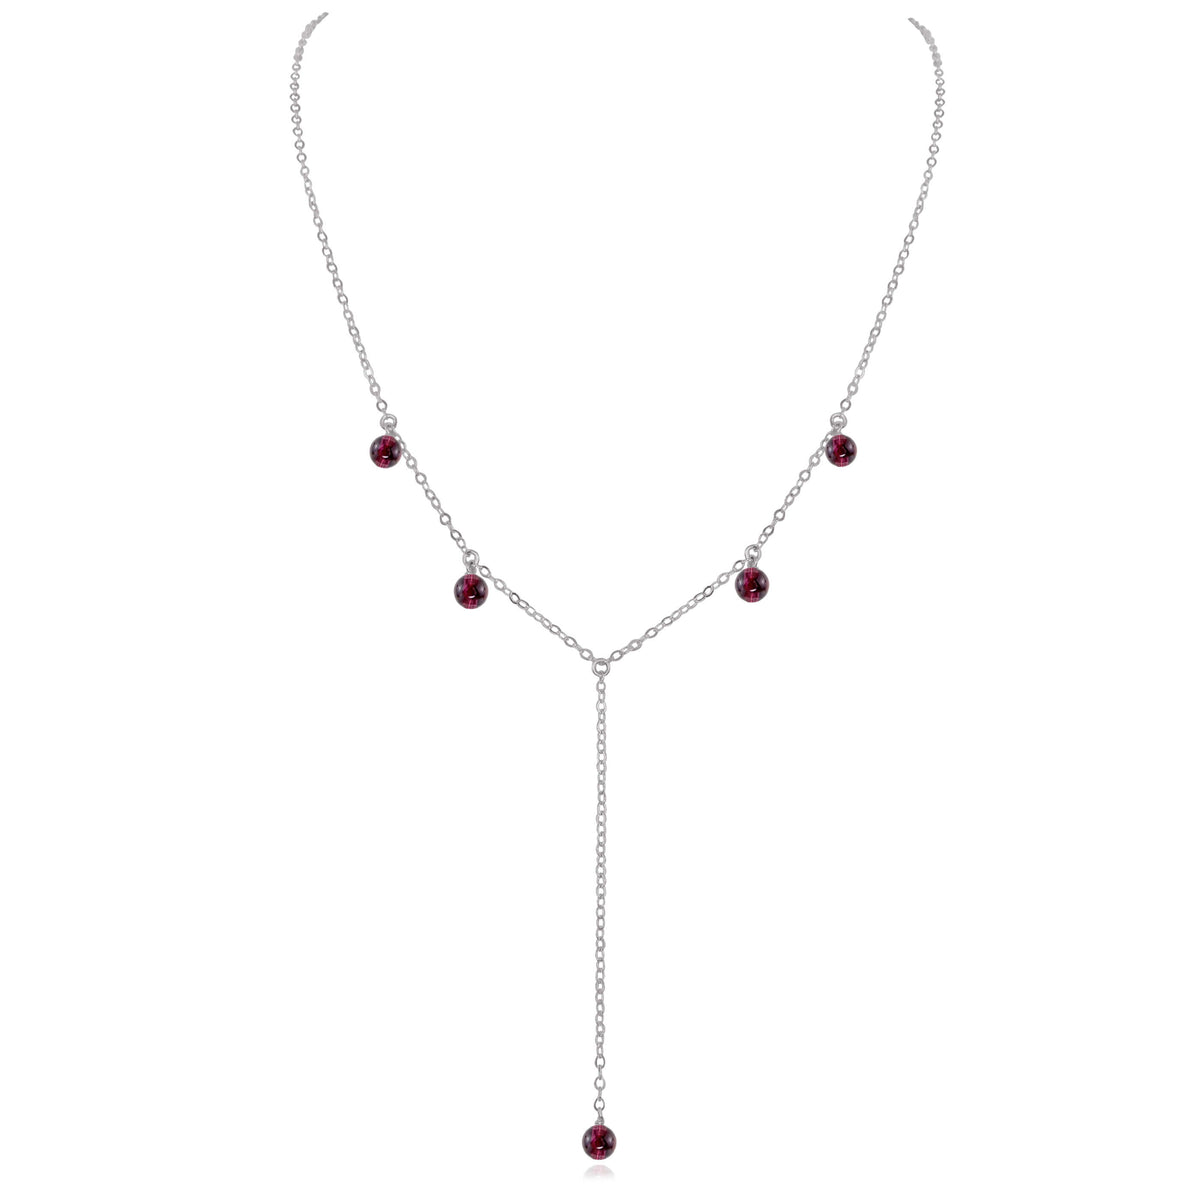 Boho Y Necklace - Garnet - Stainless Steel - Luna Tide Handmade Jewellery